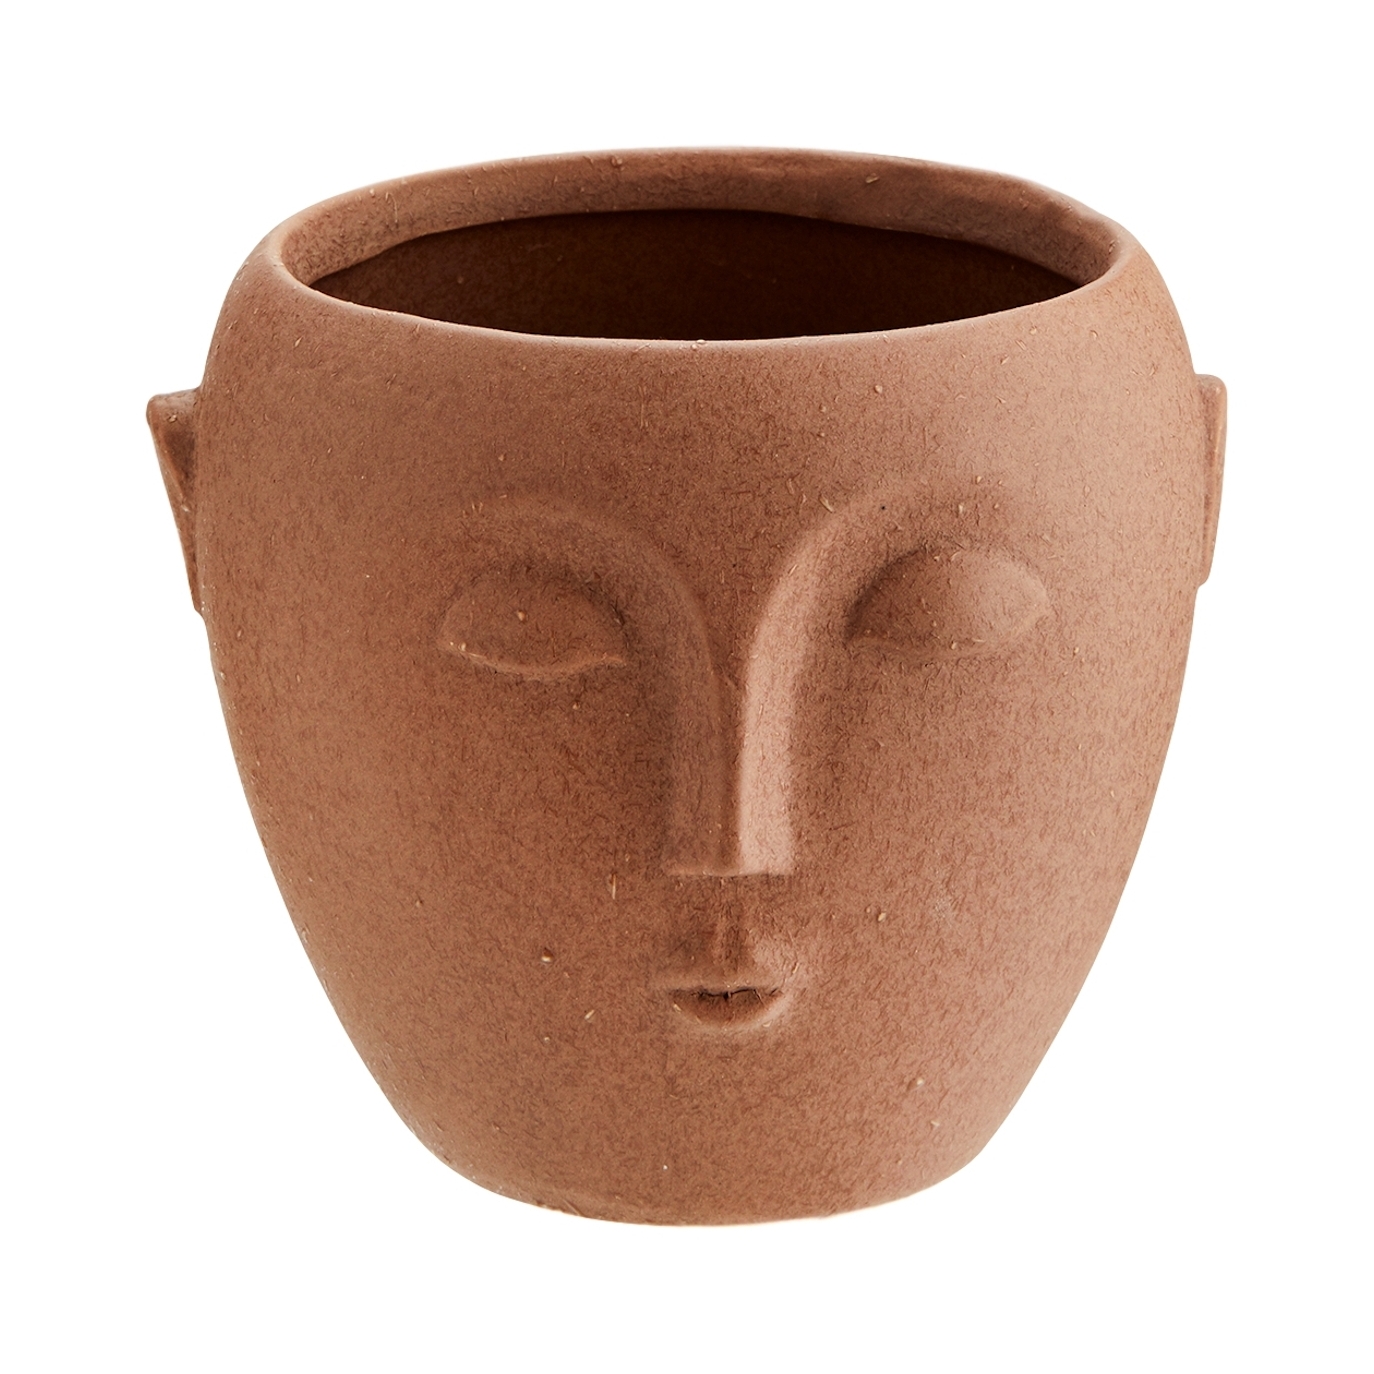 Madam Stoltz - Flower Pot With Face Imprint Brown 14x12 - Jarrones y adornos decorativos - HY14827-13 